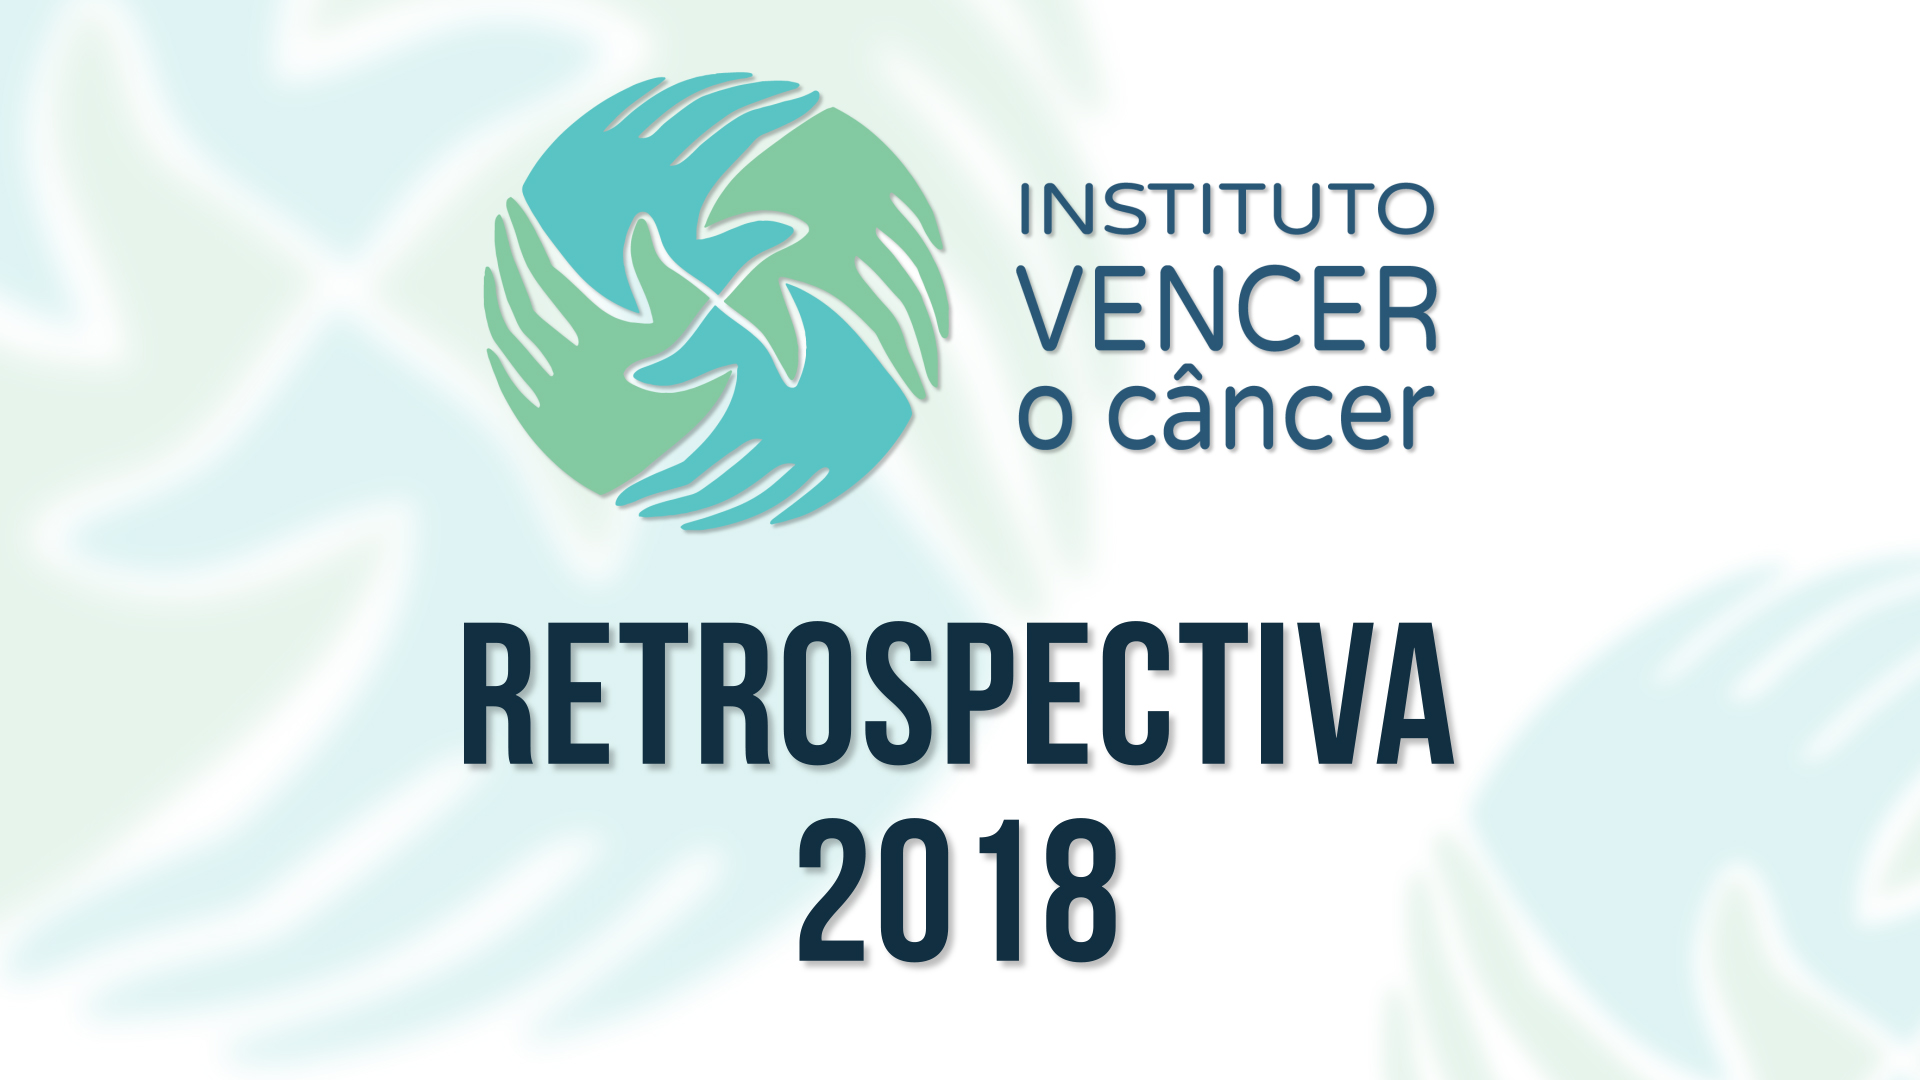 Thumbnail com logo do Instituto Vencer o Câncer e texto "retrospectiva 2018".